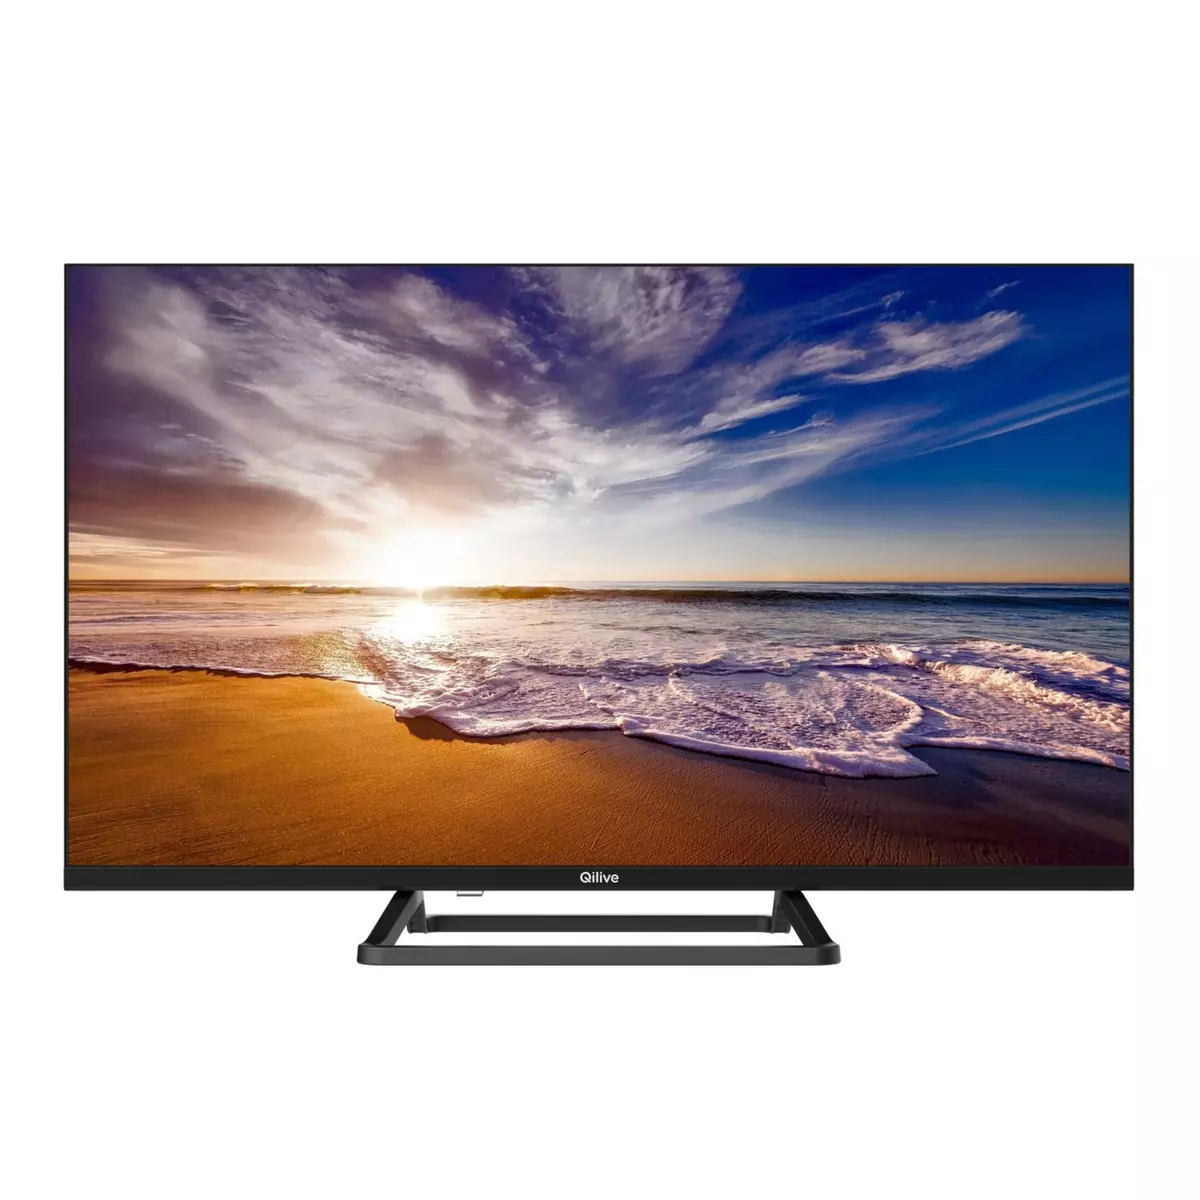 QILIVE Q32HA232B TV DLED HD 80 cm Smart TV